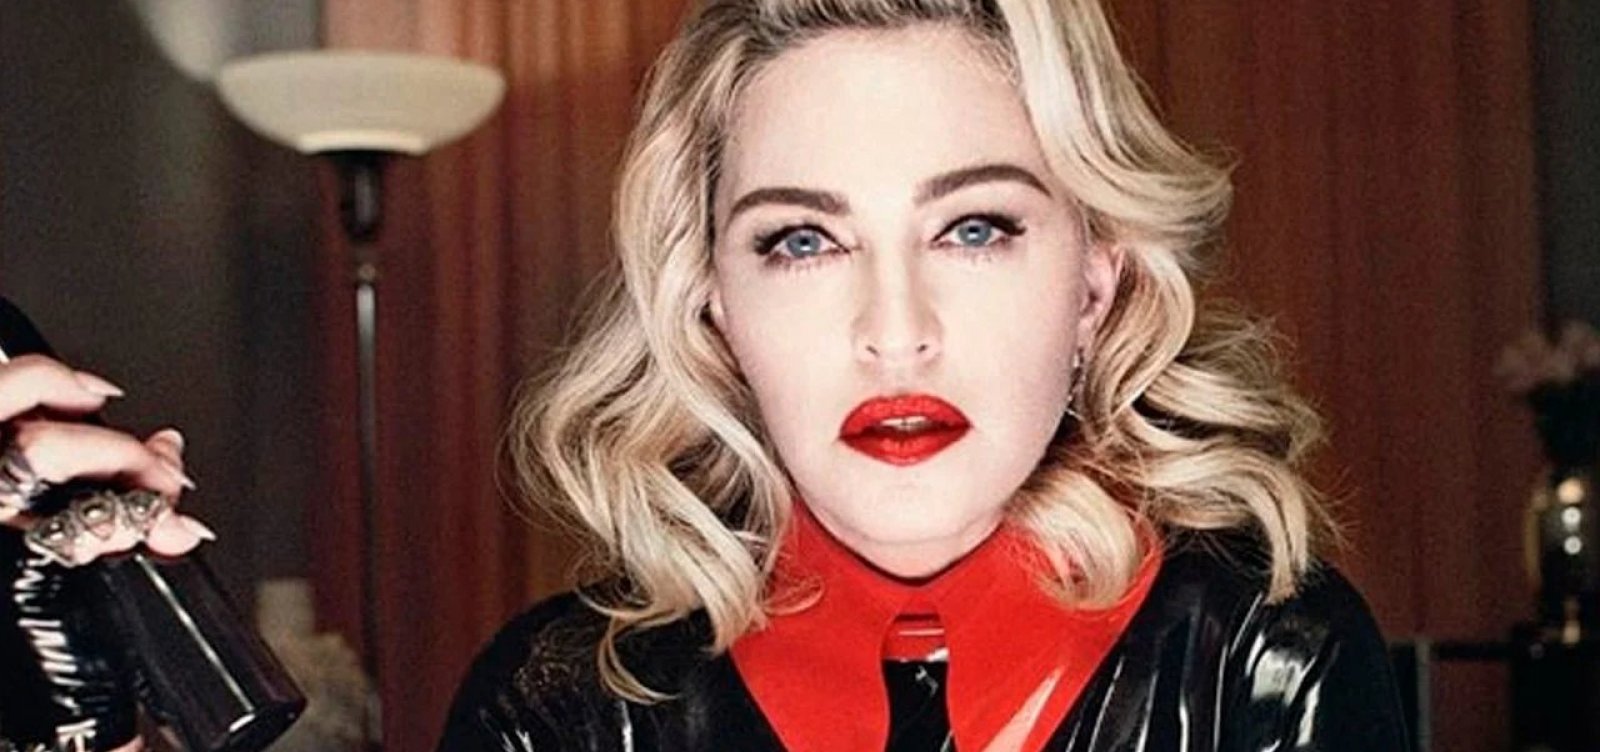 Madonna interrompe show e pede que desliguem o ar condicionado: "Tenho trabalhado pra c*ralho. Me respeitem"